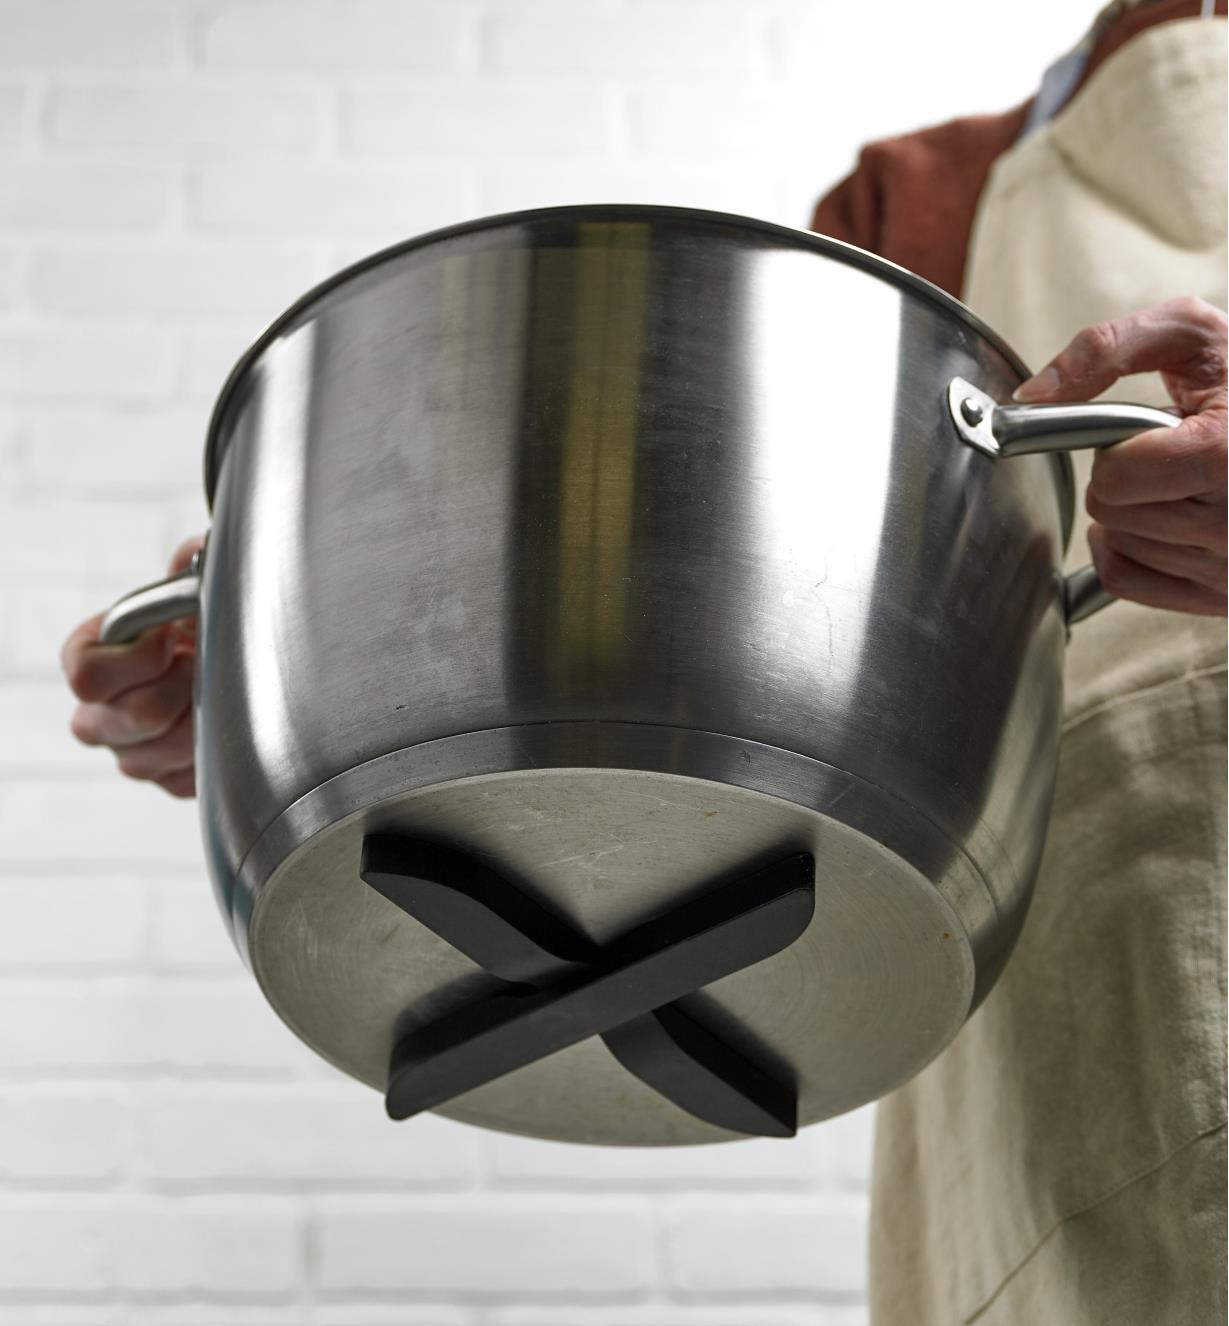 Dessous de plat magnétique disposé en X sous une casserole en acier